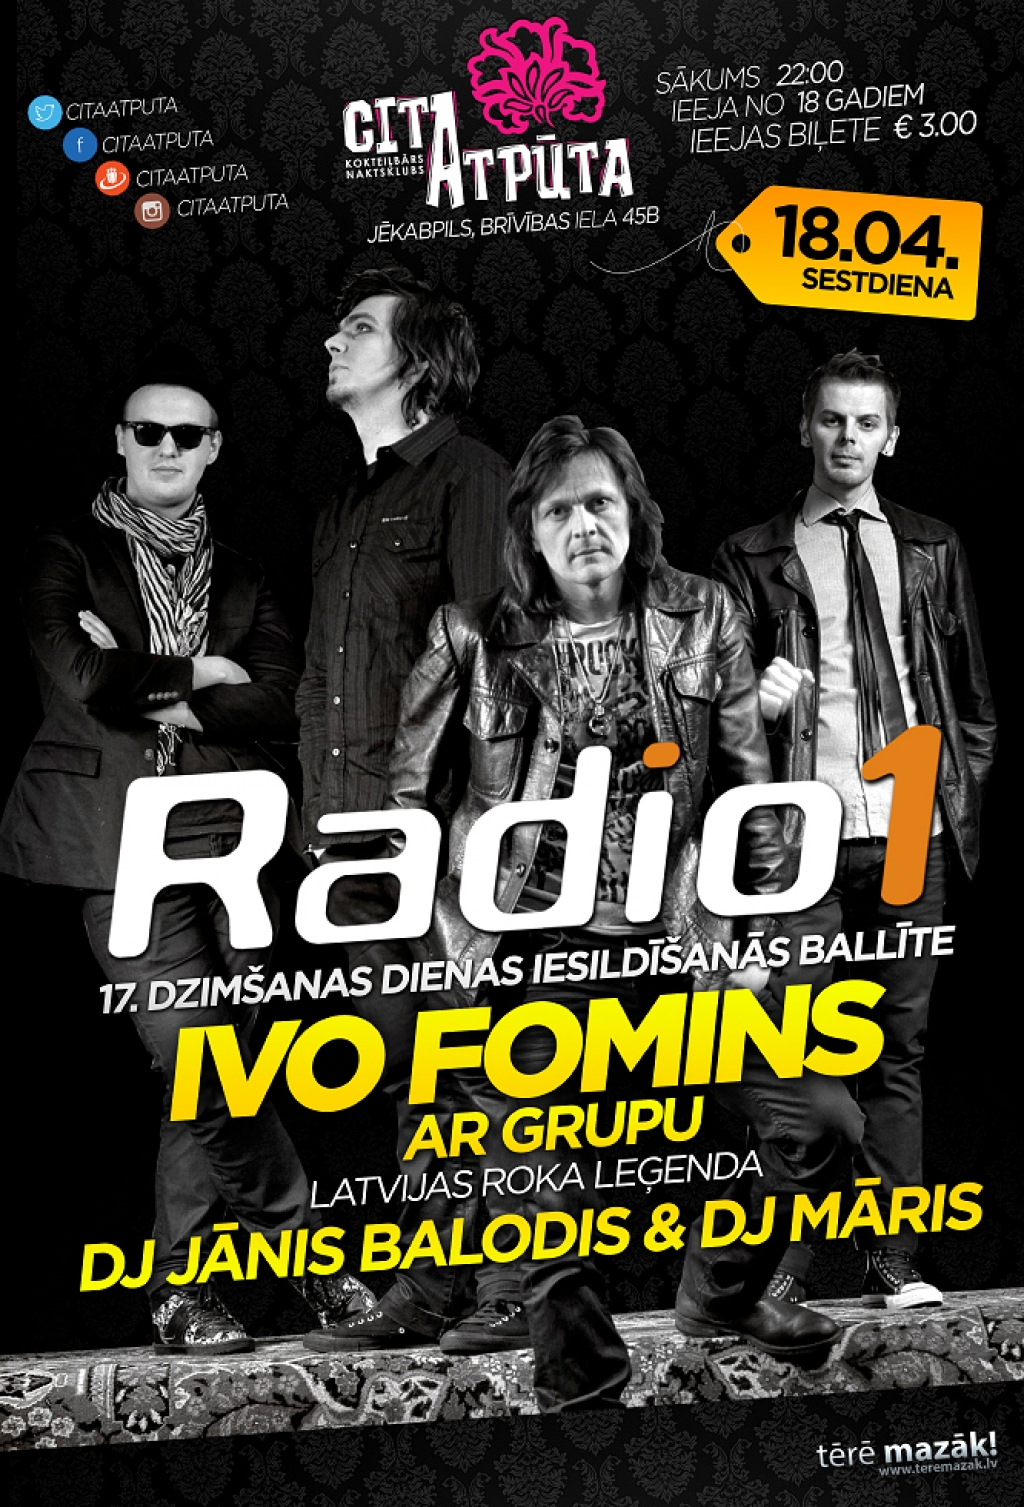 Radio1 aicina uz Ivo Fomina koncertu "Citā atpūtā"